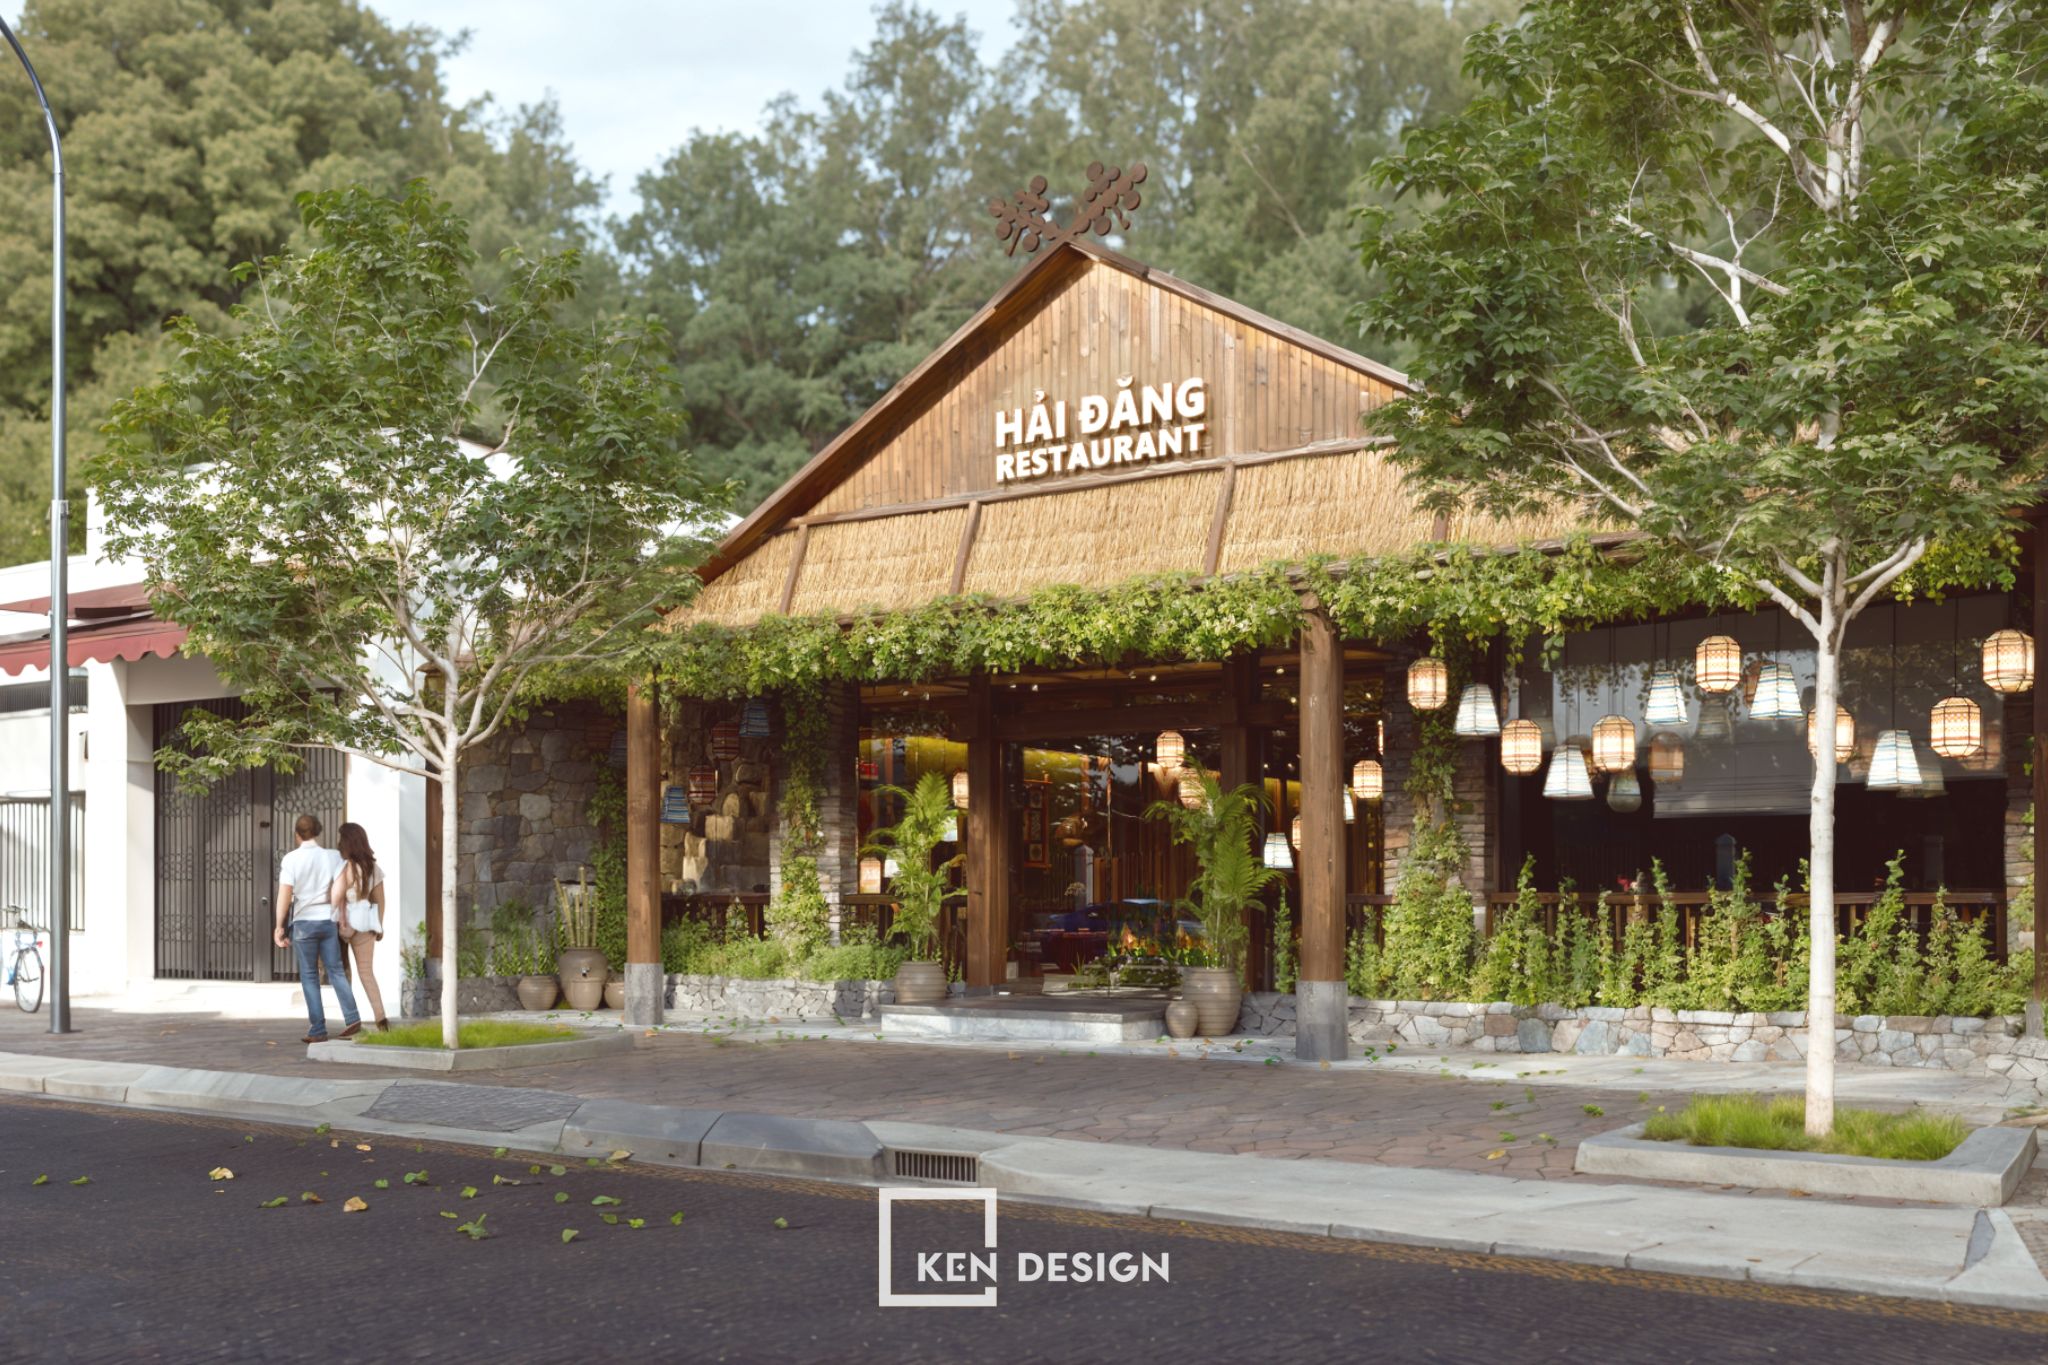 The Design of Hai Dang RestaurantThe Design of Hai Dang Restaurant